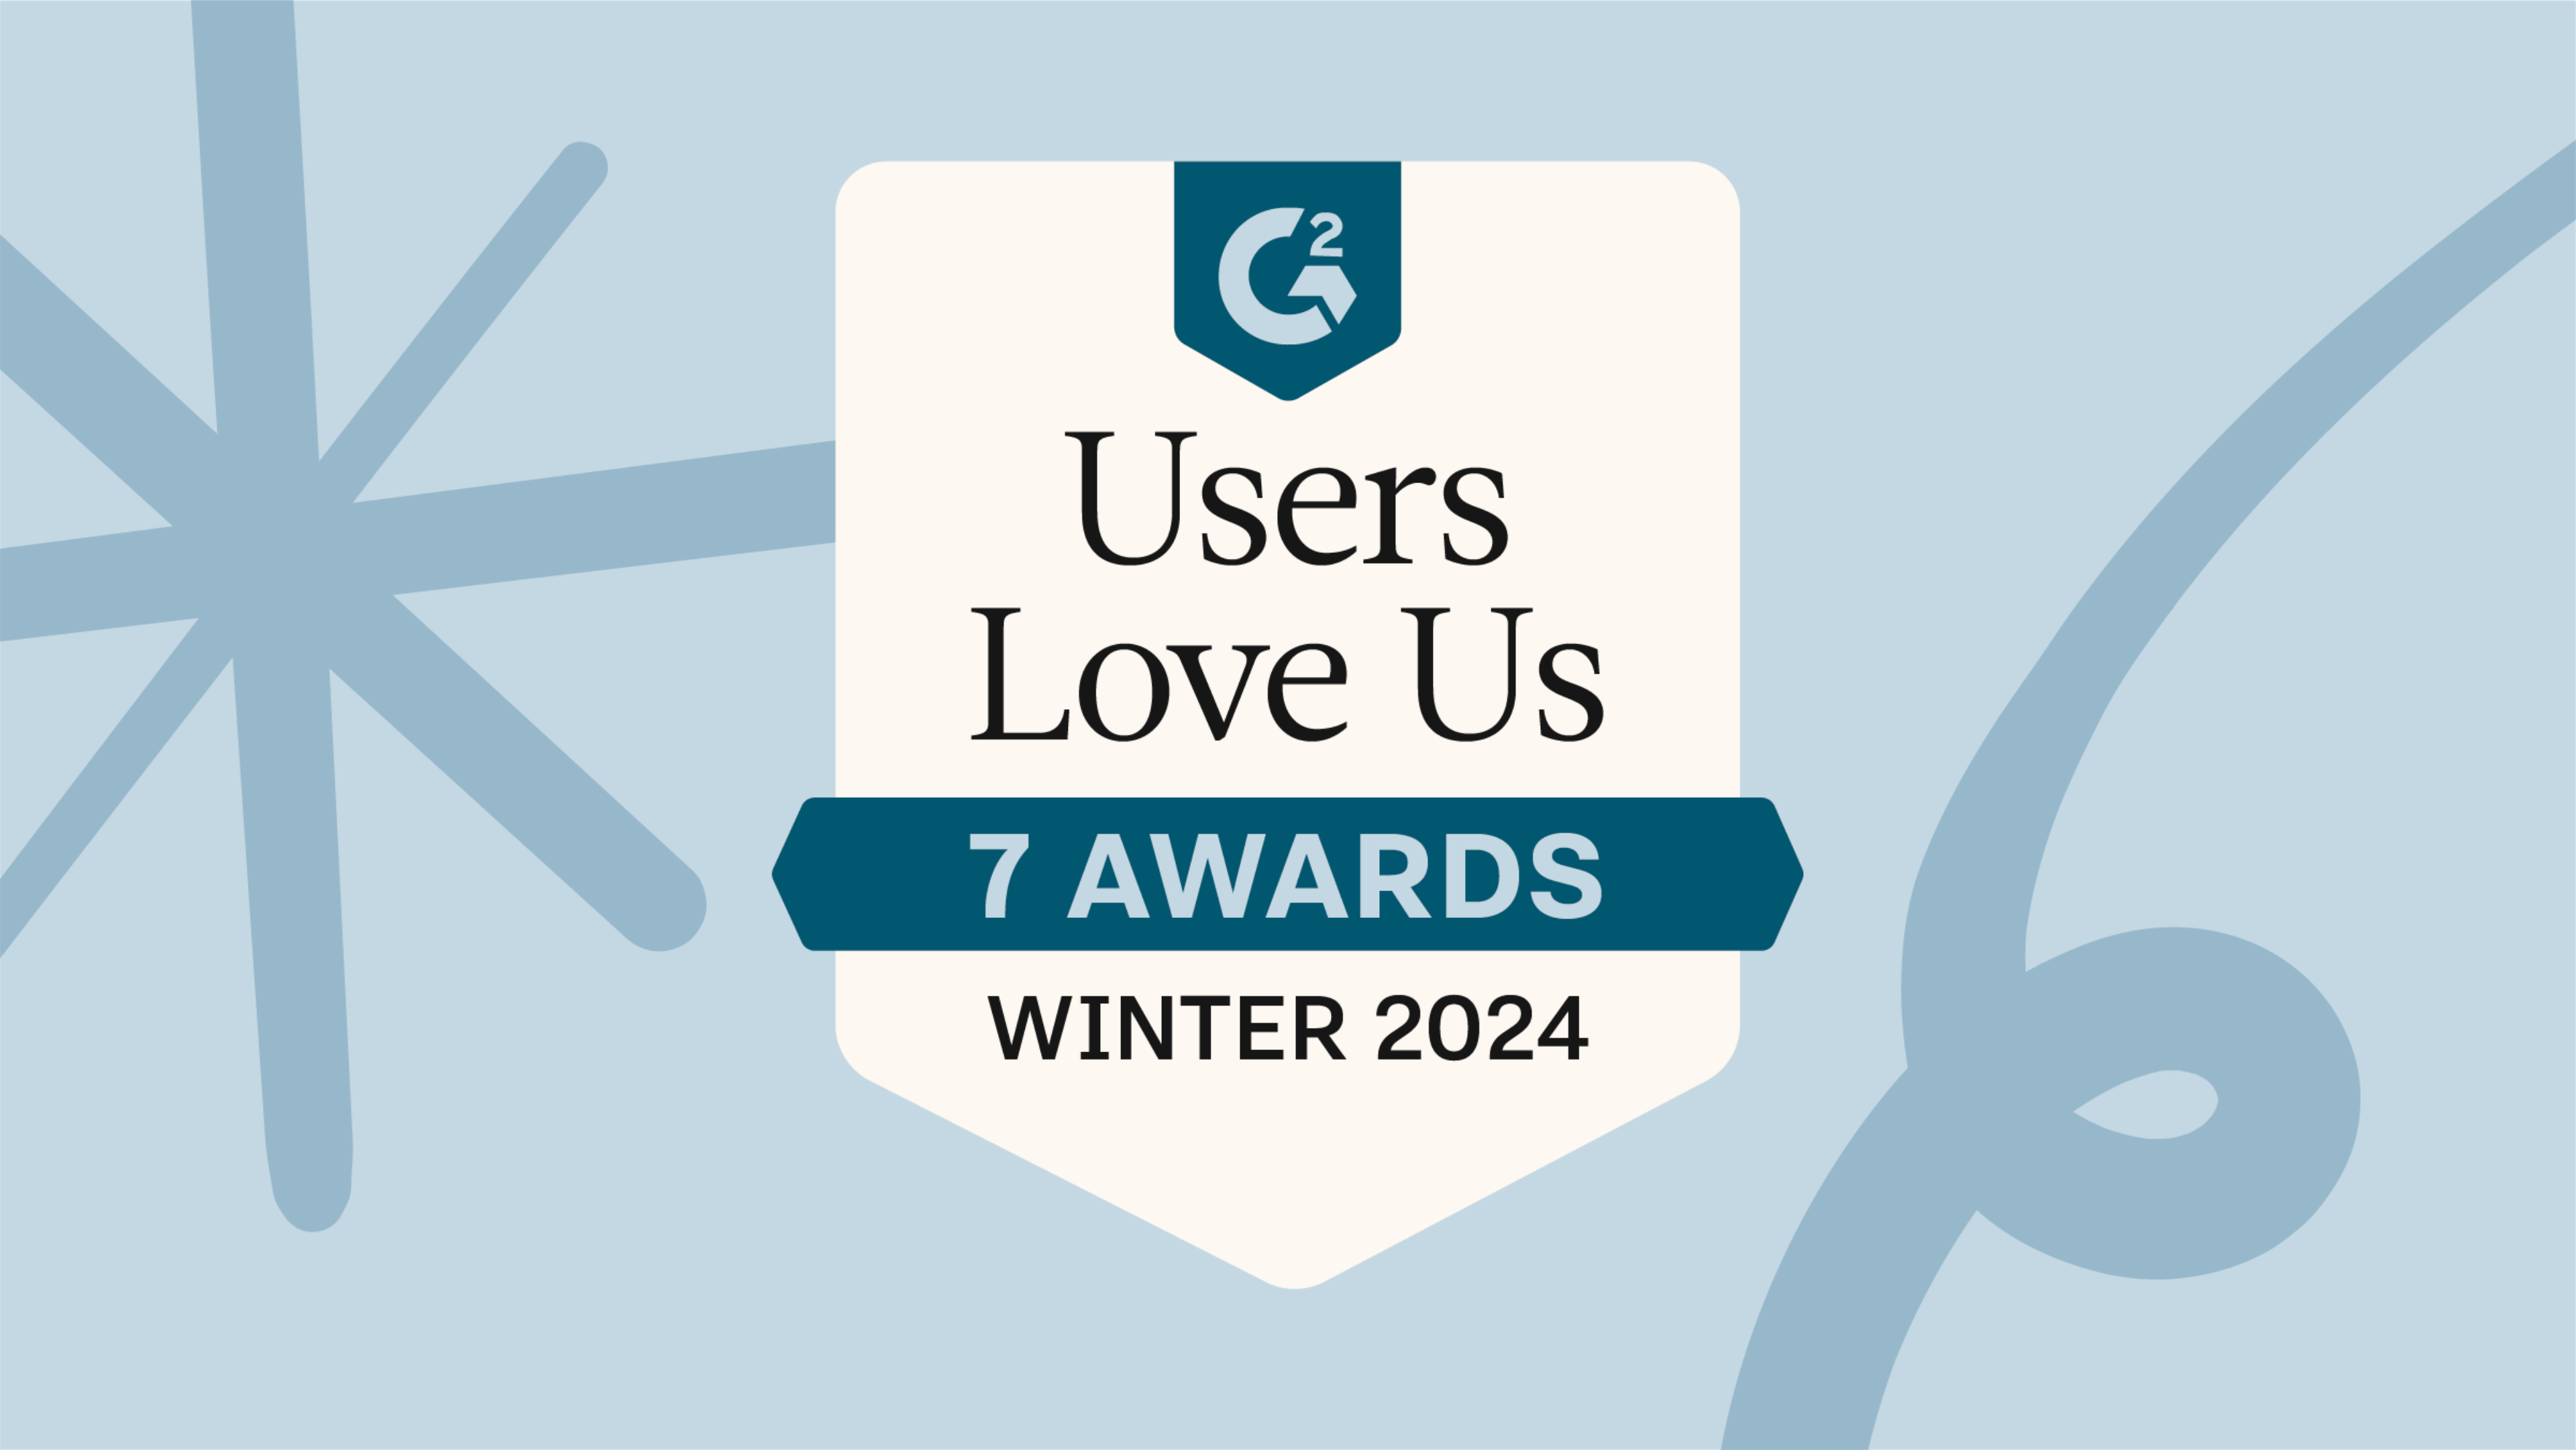 G2 Awards Winter 2024